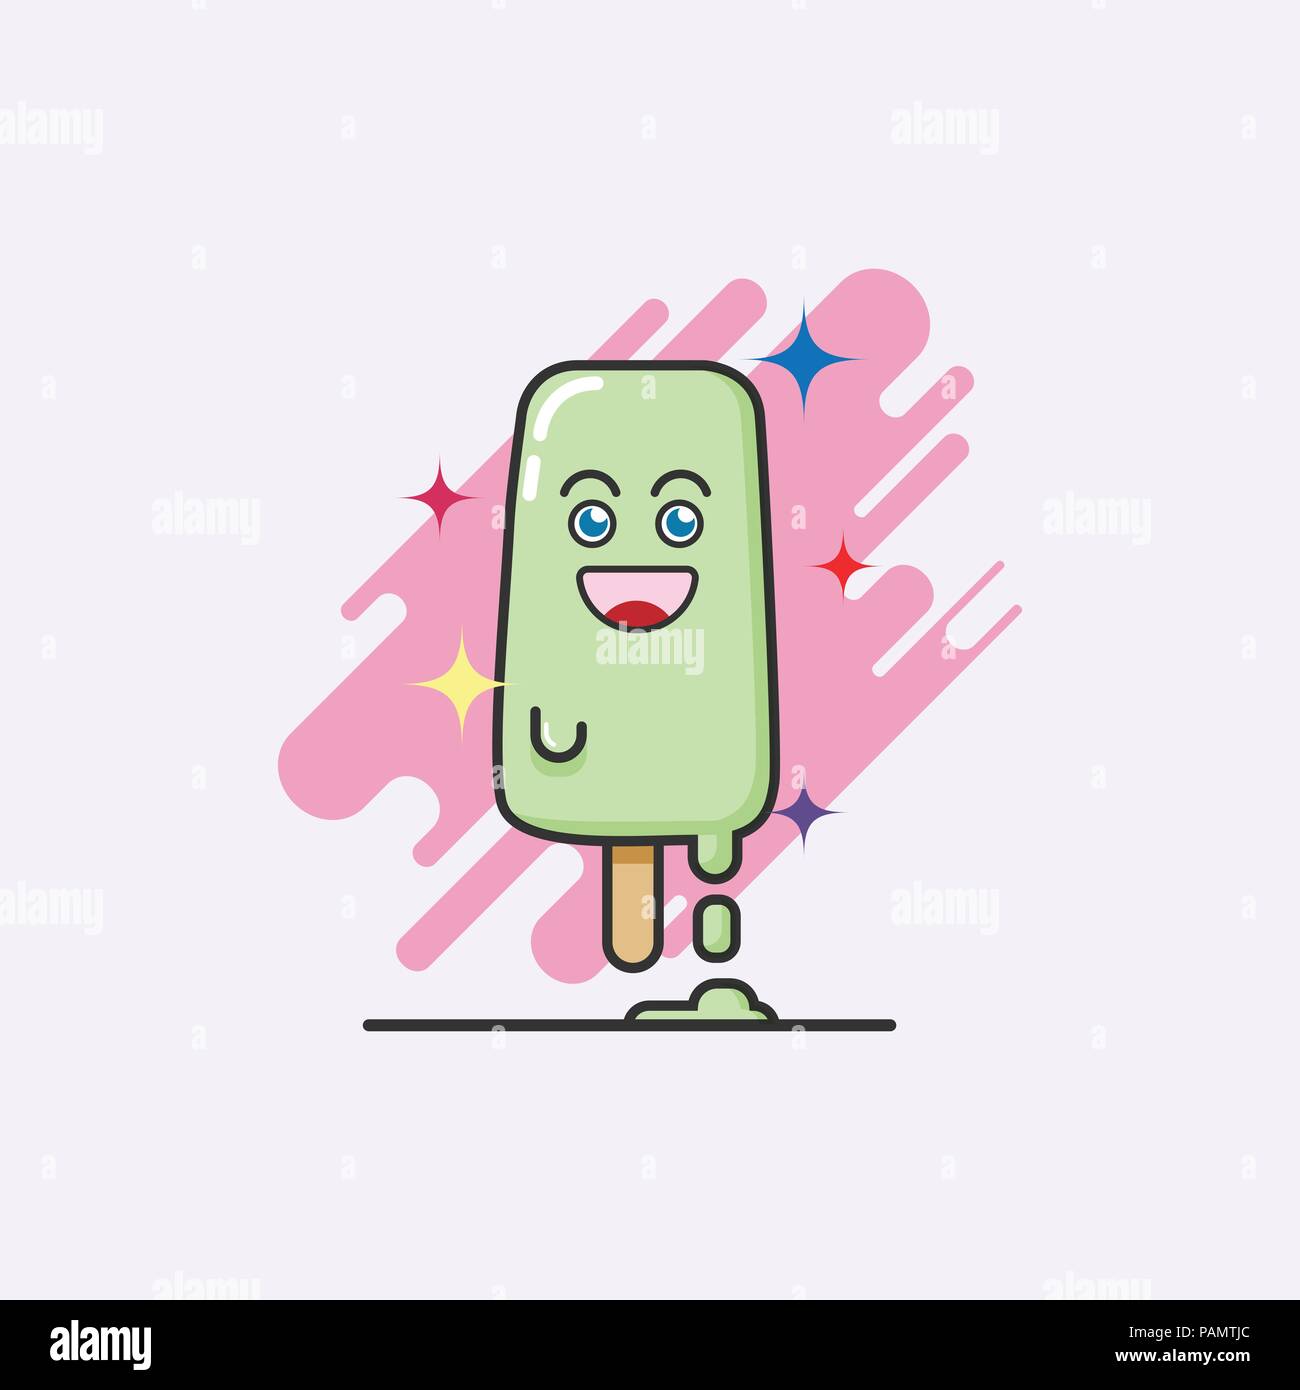 Cute Cartoon von ice cream Bar, lime sherbet Geschmack auf weißem Hintergrund mit Emotion glückliches Gesicht schmelzen. Eis veranschaulicht Hintergrund. creative Stock Vektor